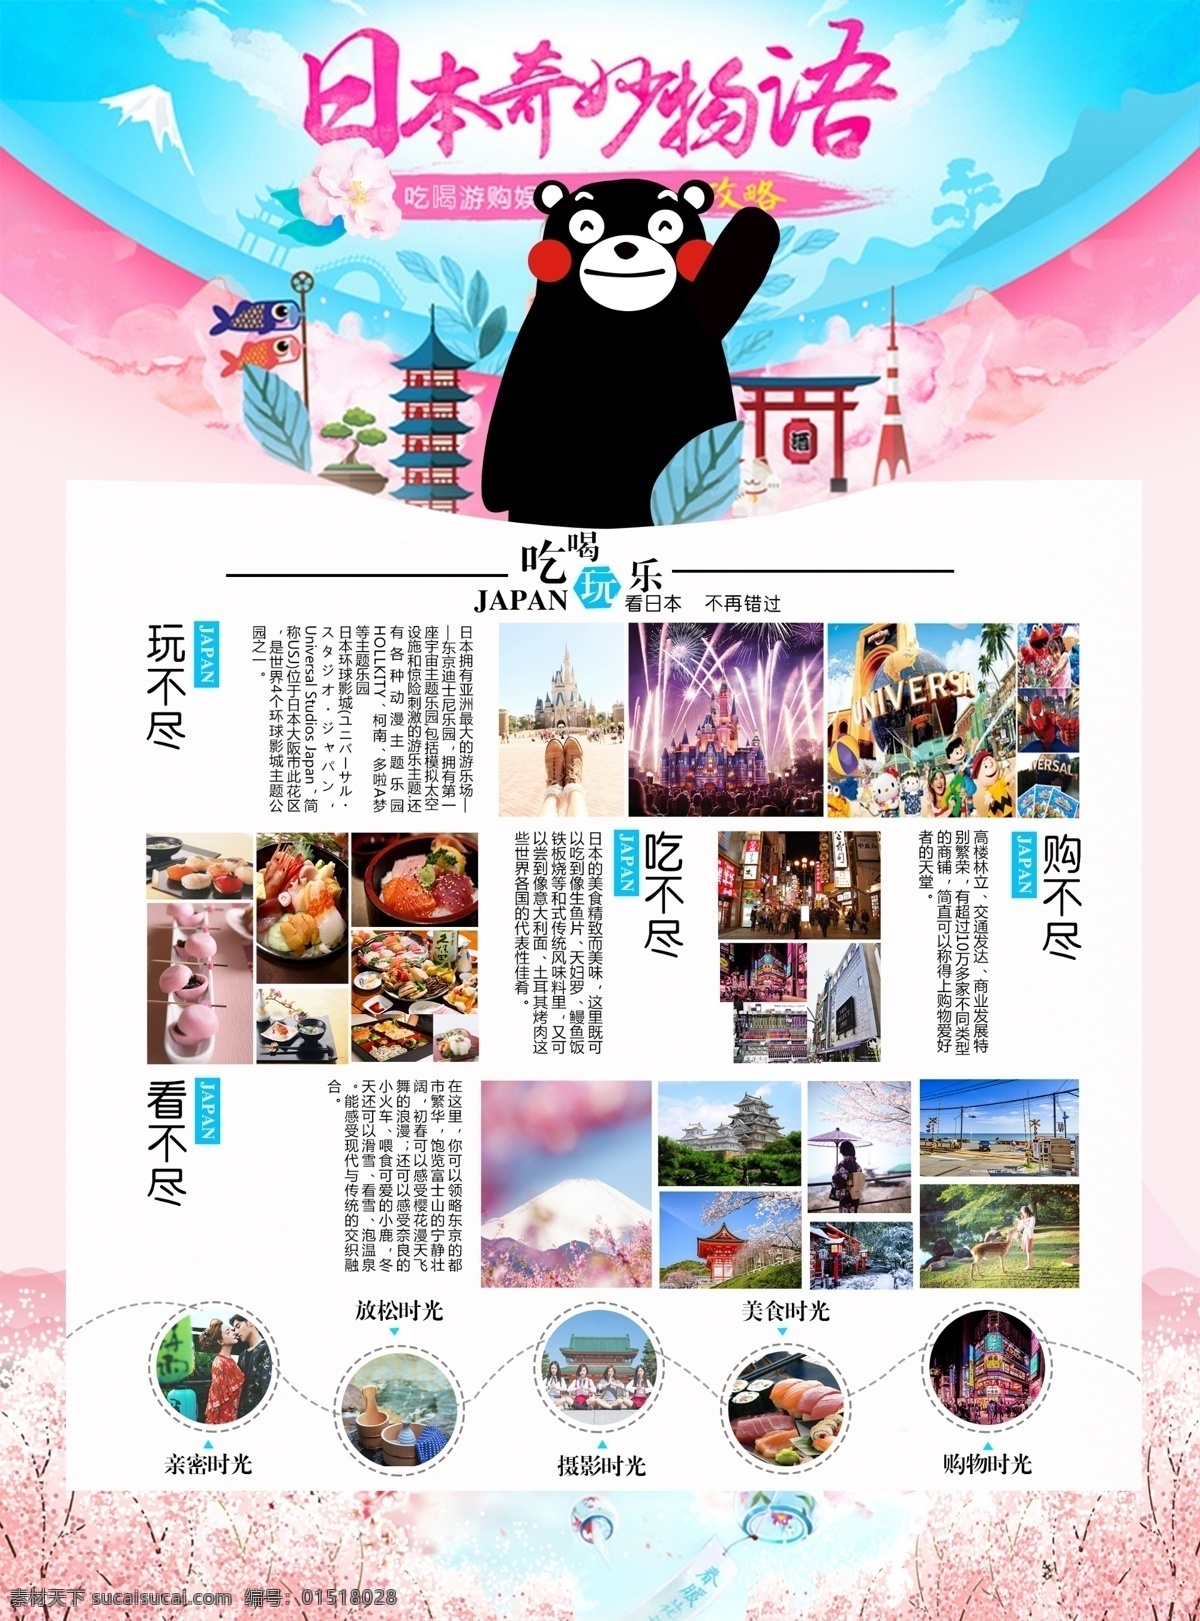 日本dm背面 日本 旅游 dm 宣传单